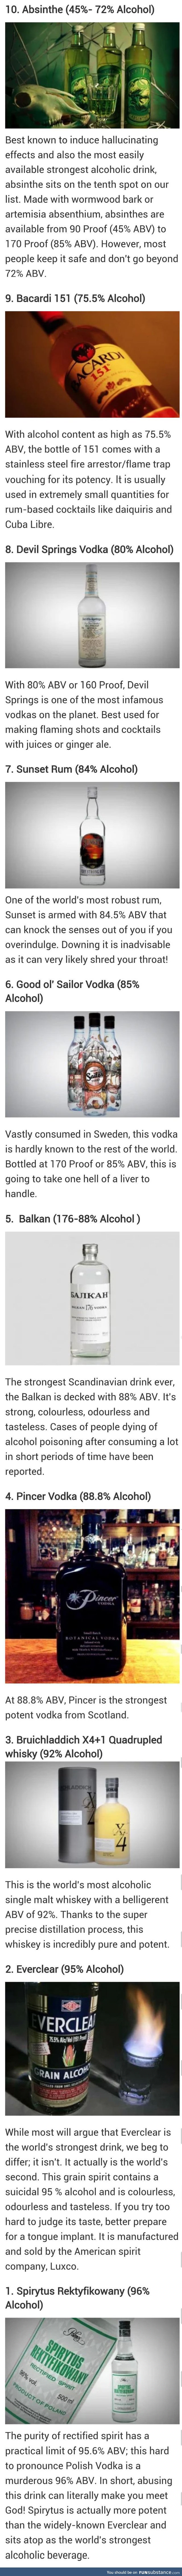 Top ten most alchoholic drinks